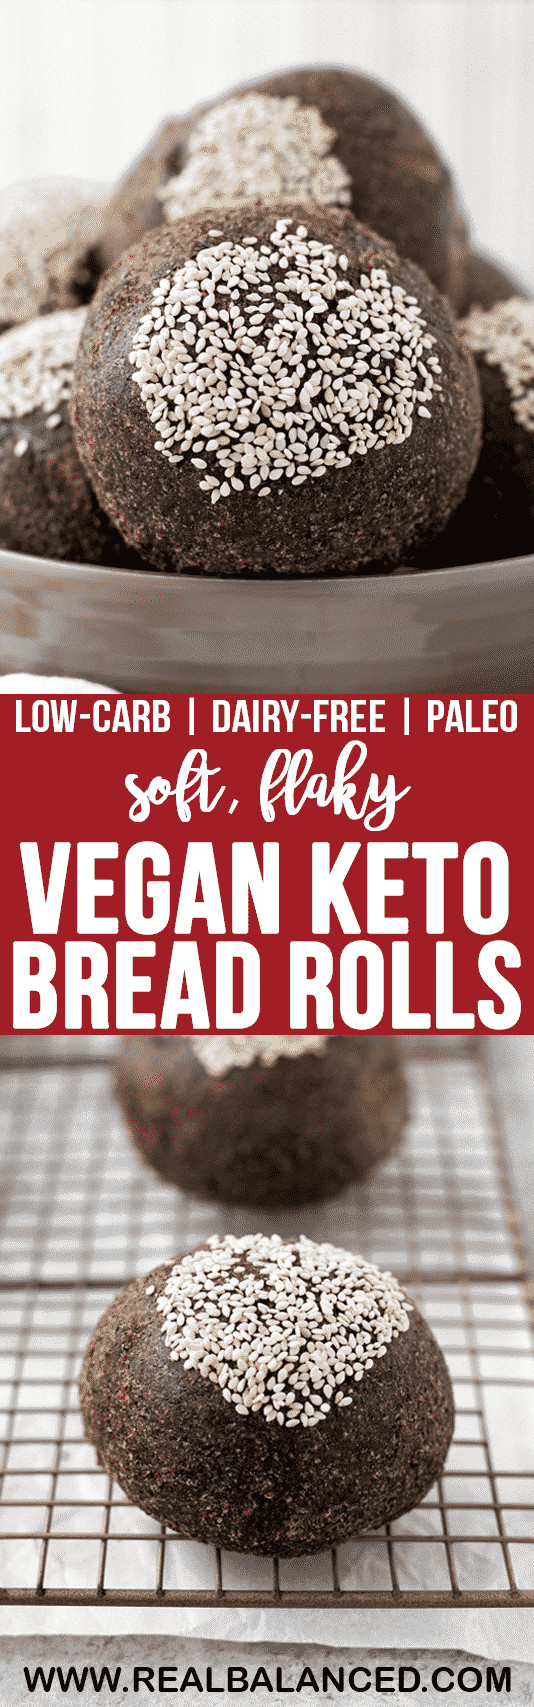 Vegan Keto Bread Rolls
 Vegan Keto Bread Rolls Recipe